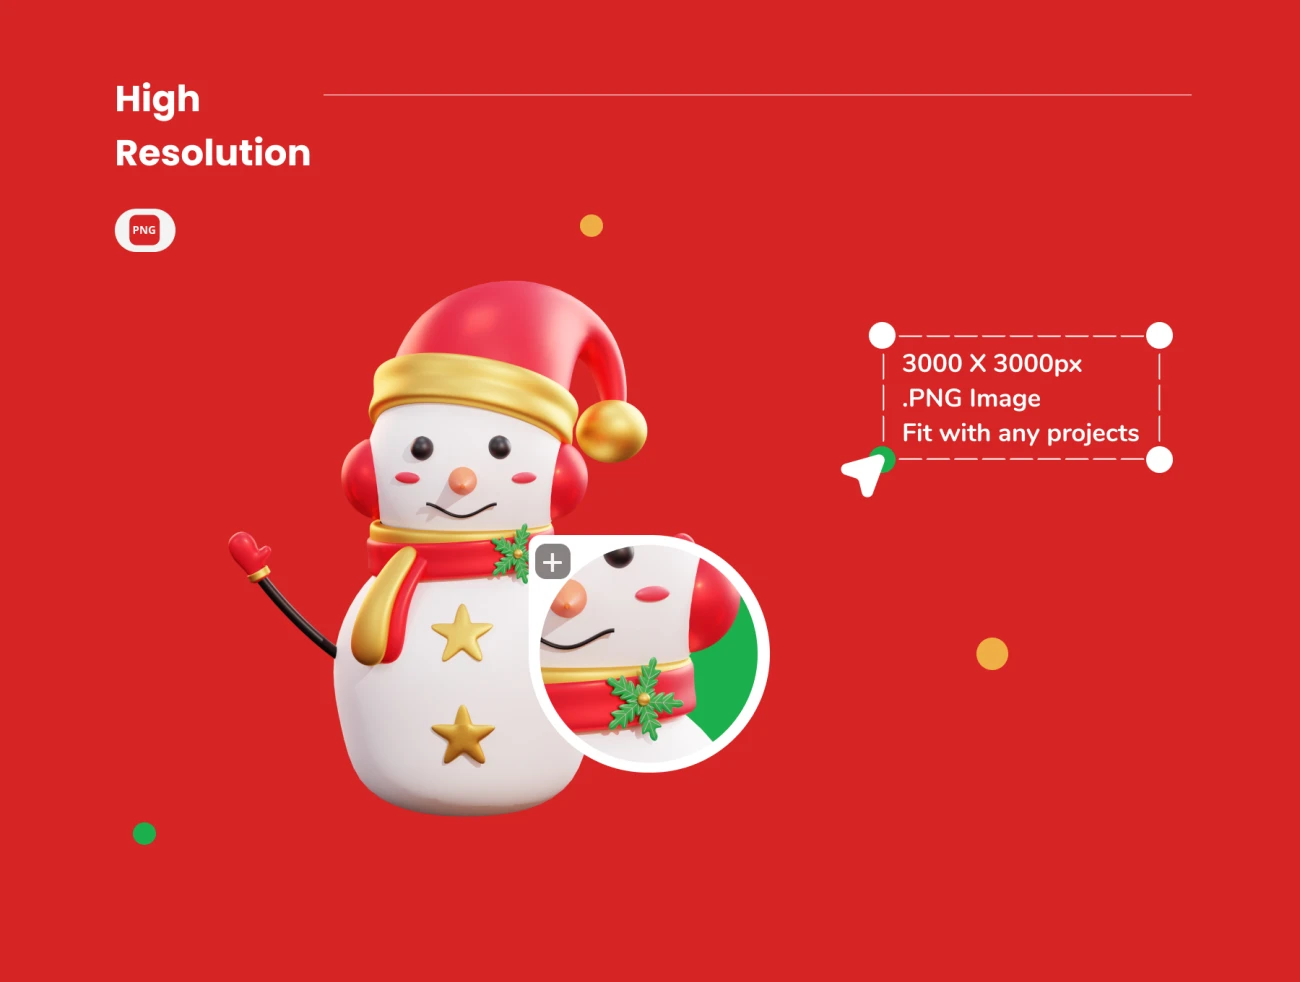 20款3D矢量圣诞节插画图标素材下载 Christmas – 3D Icon Premium Pack .blender .psd .figma插图9